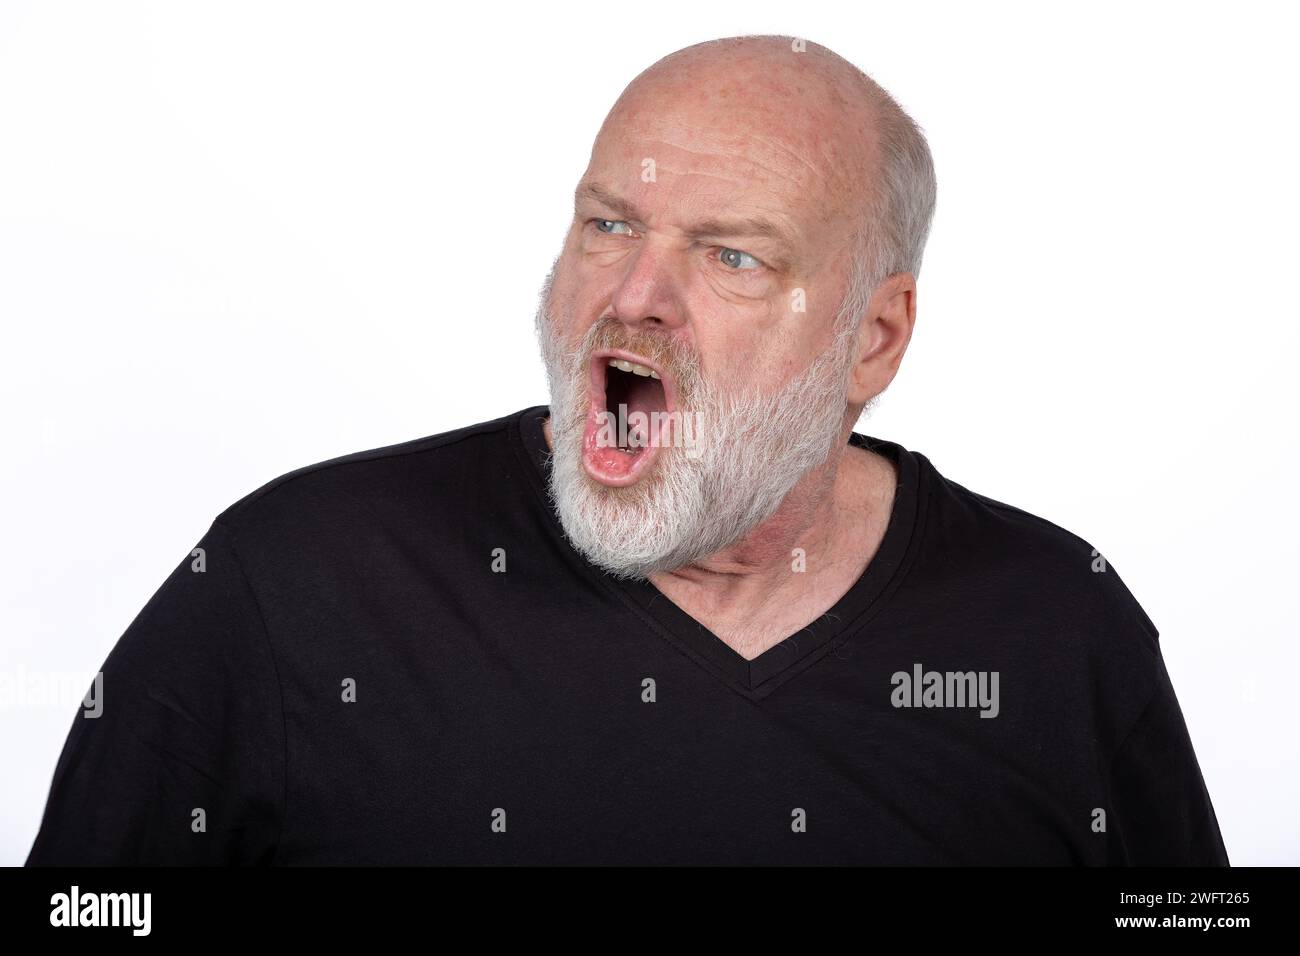 Intense Moyen âge Bearded Man criant avec colère en T-shirt noir, émotion faciale expressive sur fond blanc - Portrait émotionnel puissant Banque D'Images